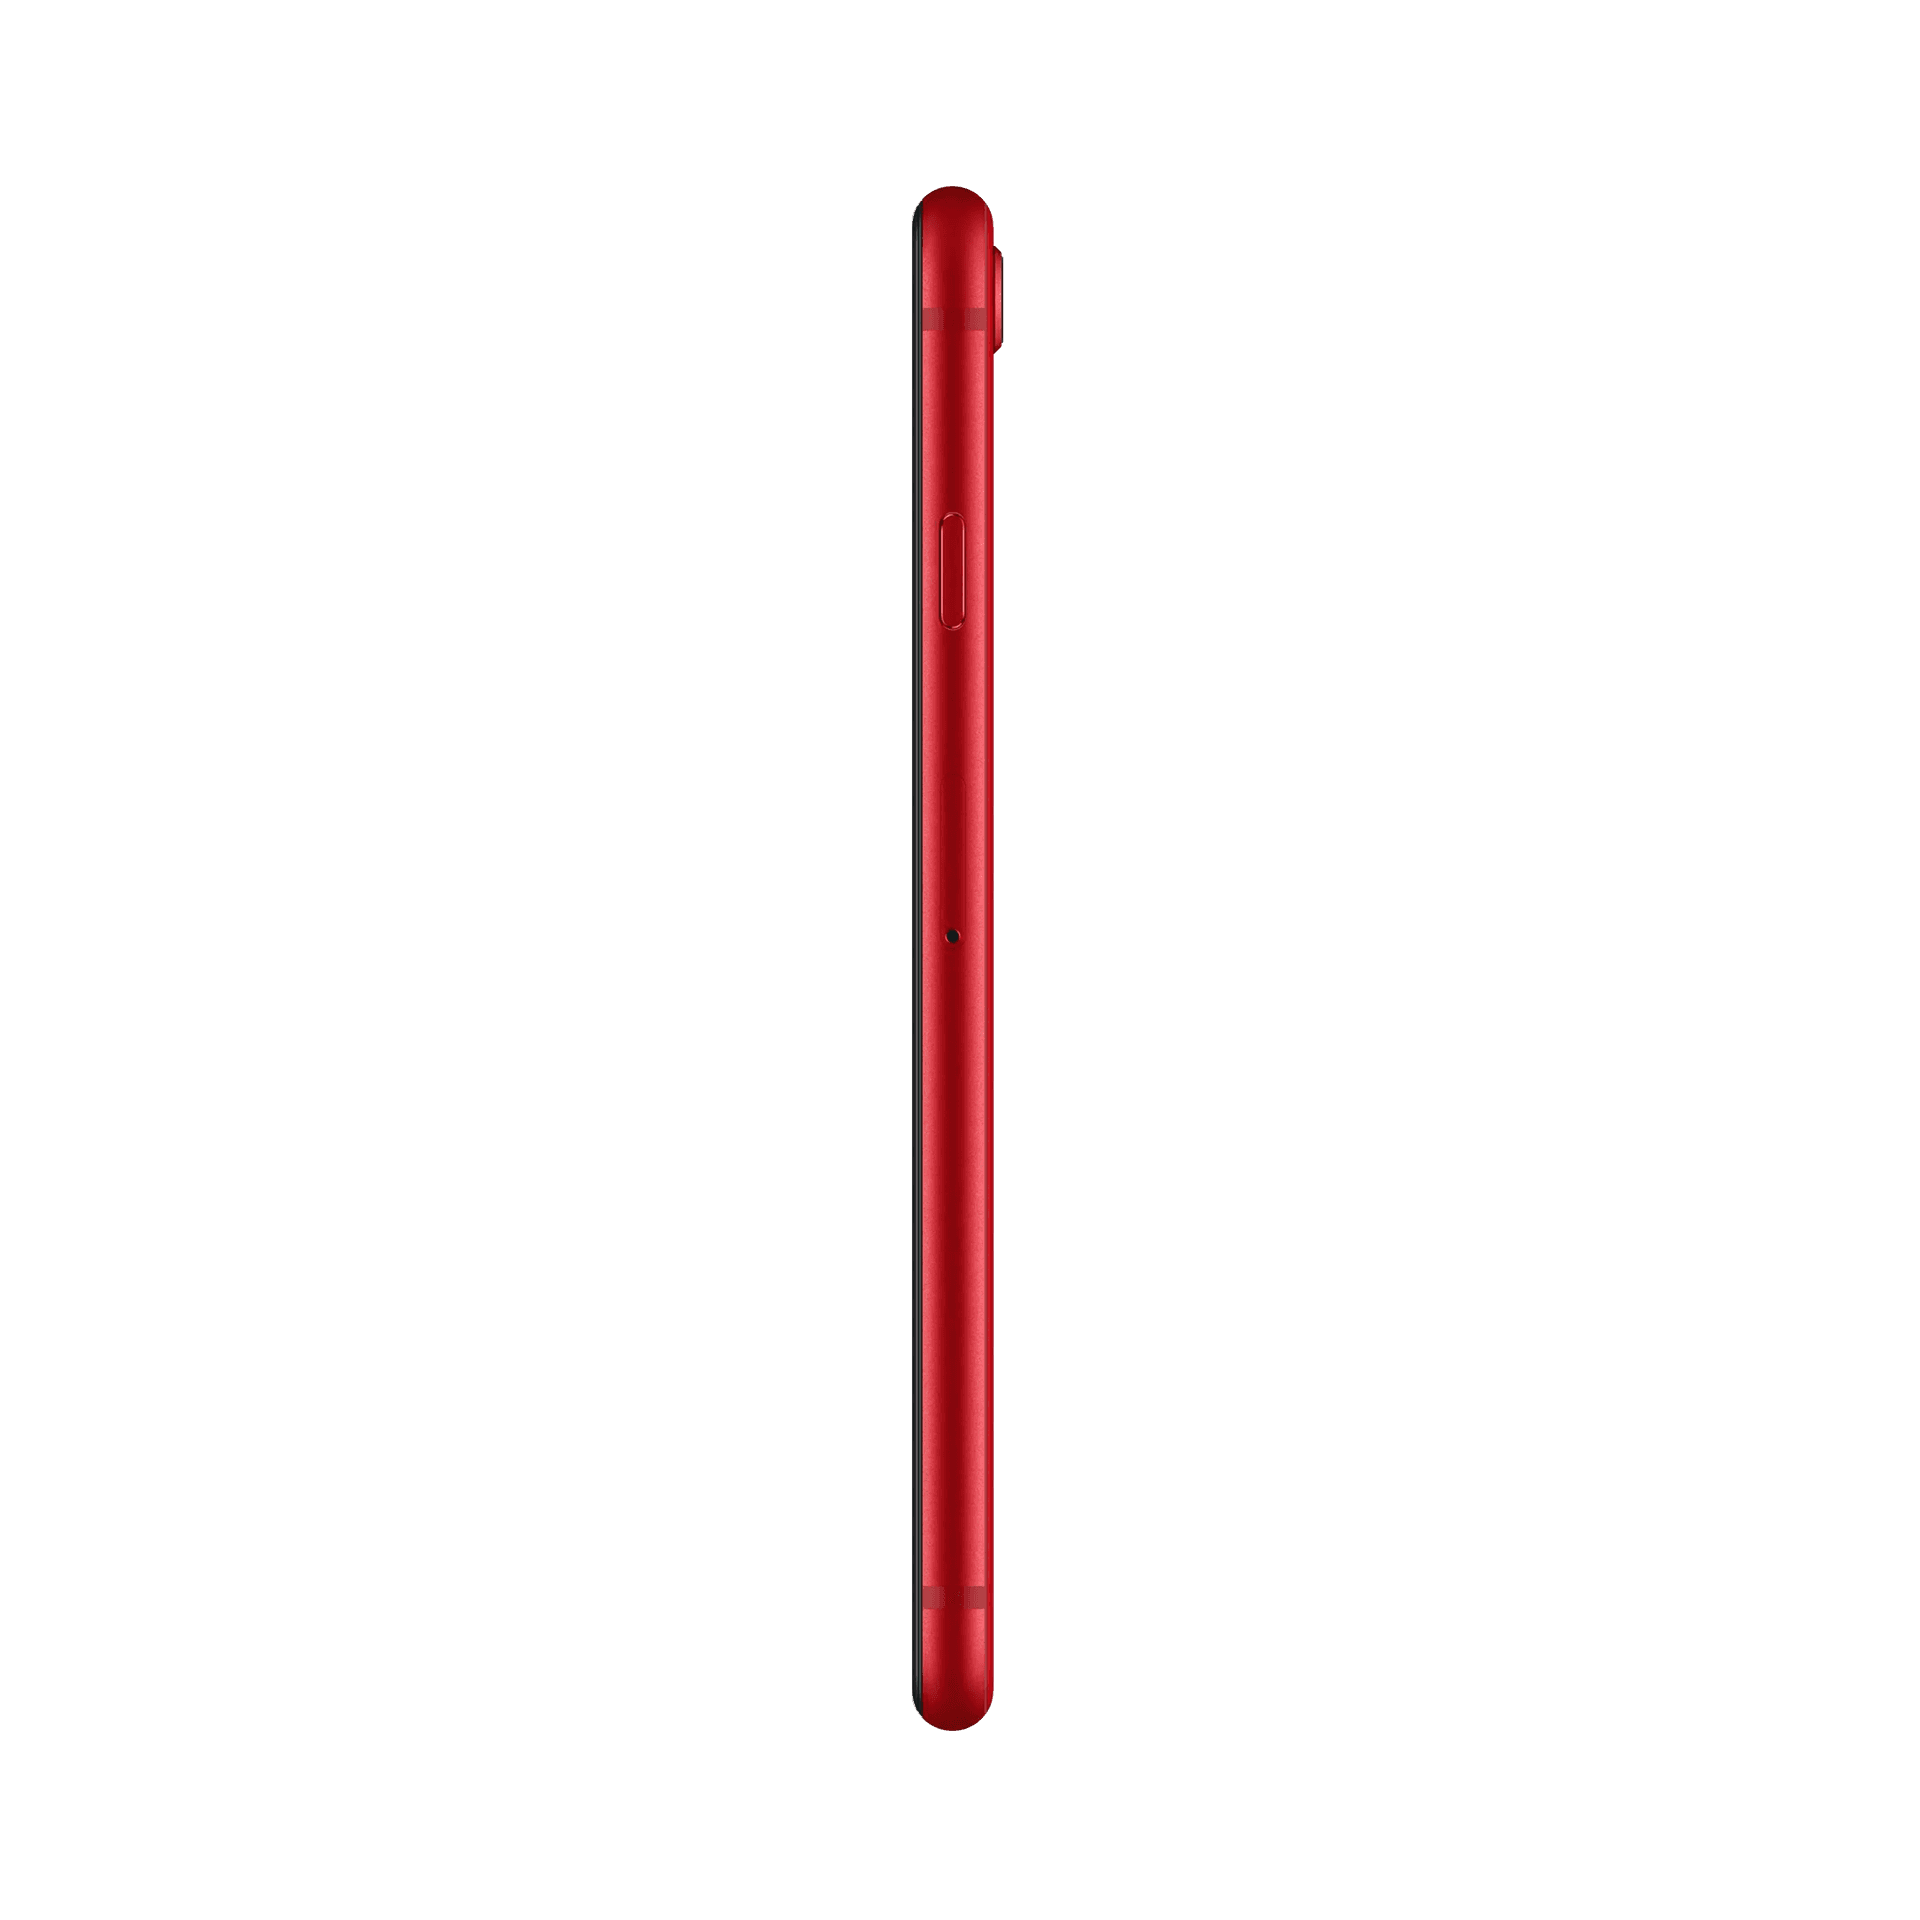 Apple iPhone SE 2020 - 256 GB - Kırmızı